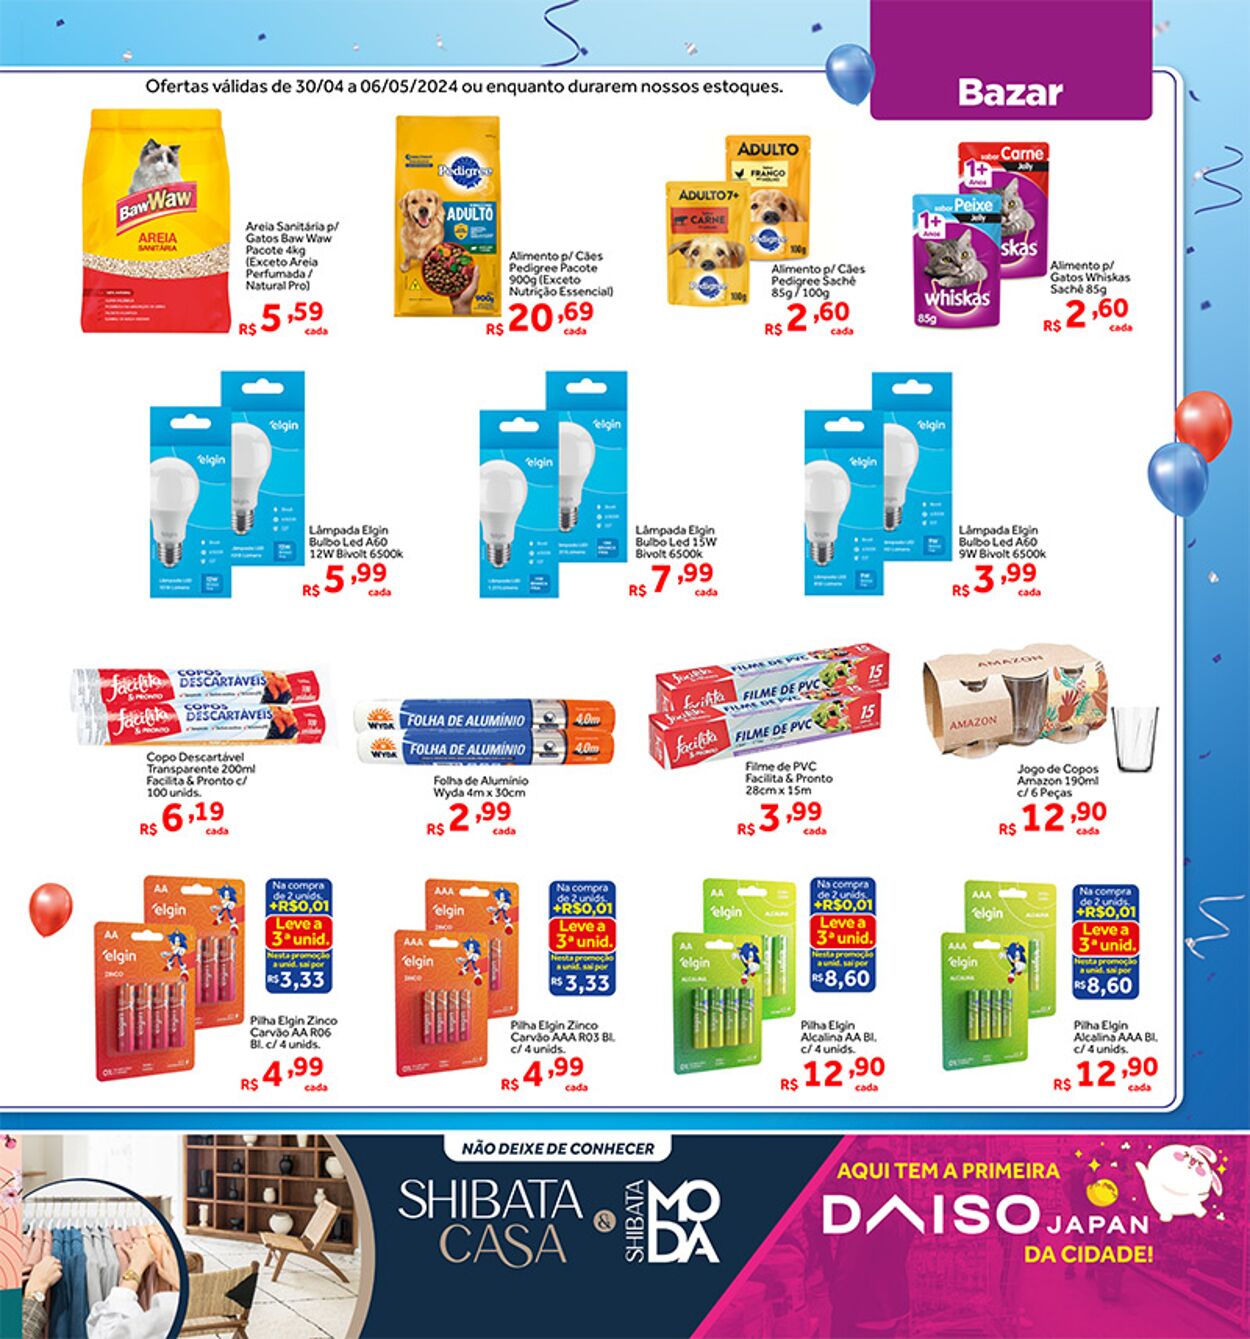 Folheto Shibata Supermercados 04.06.2024 - 05.12.2024